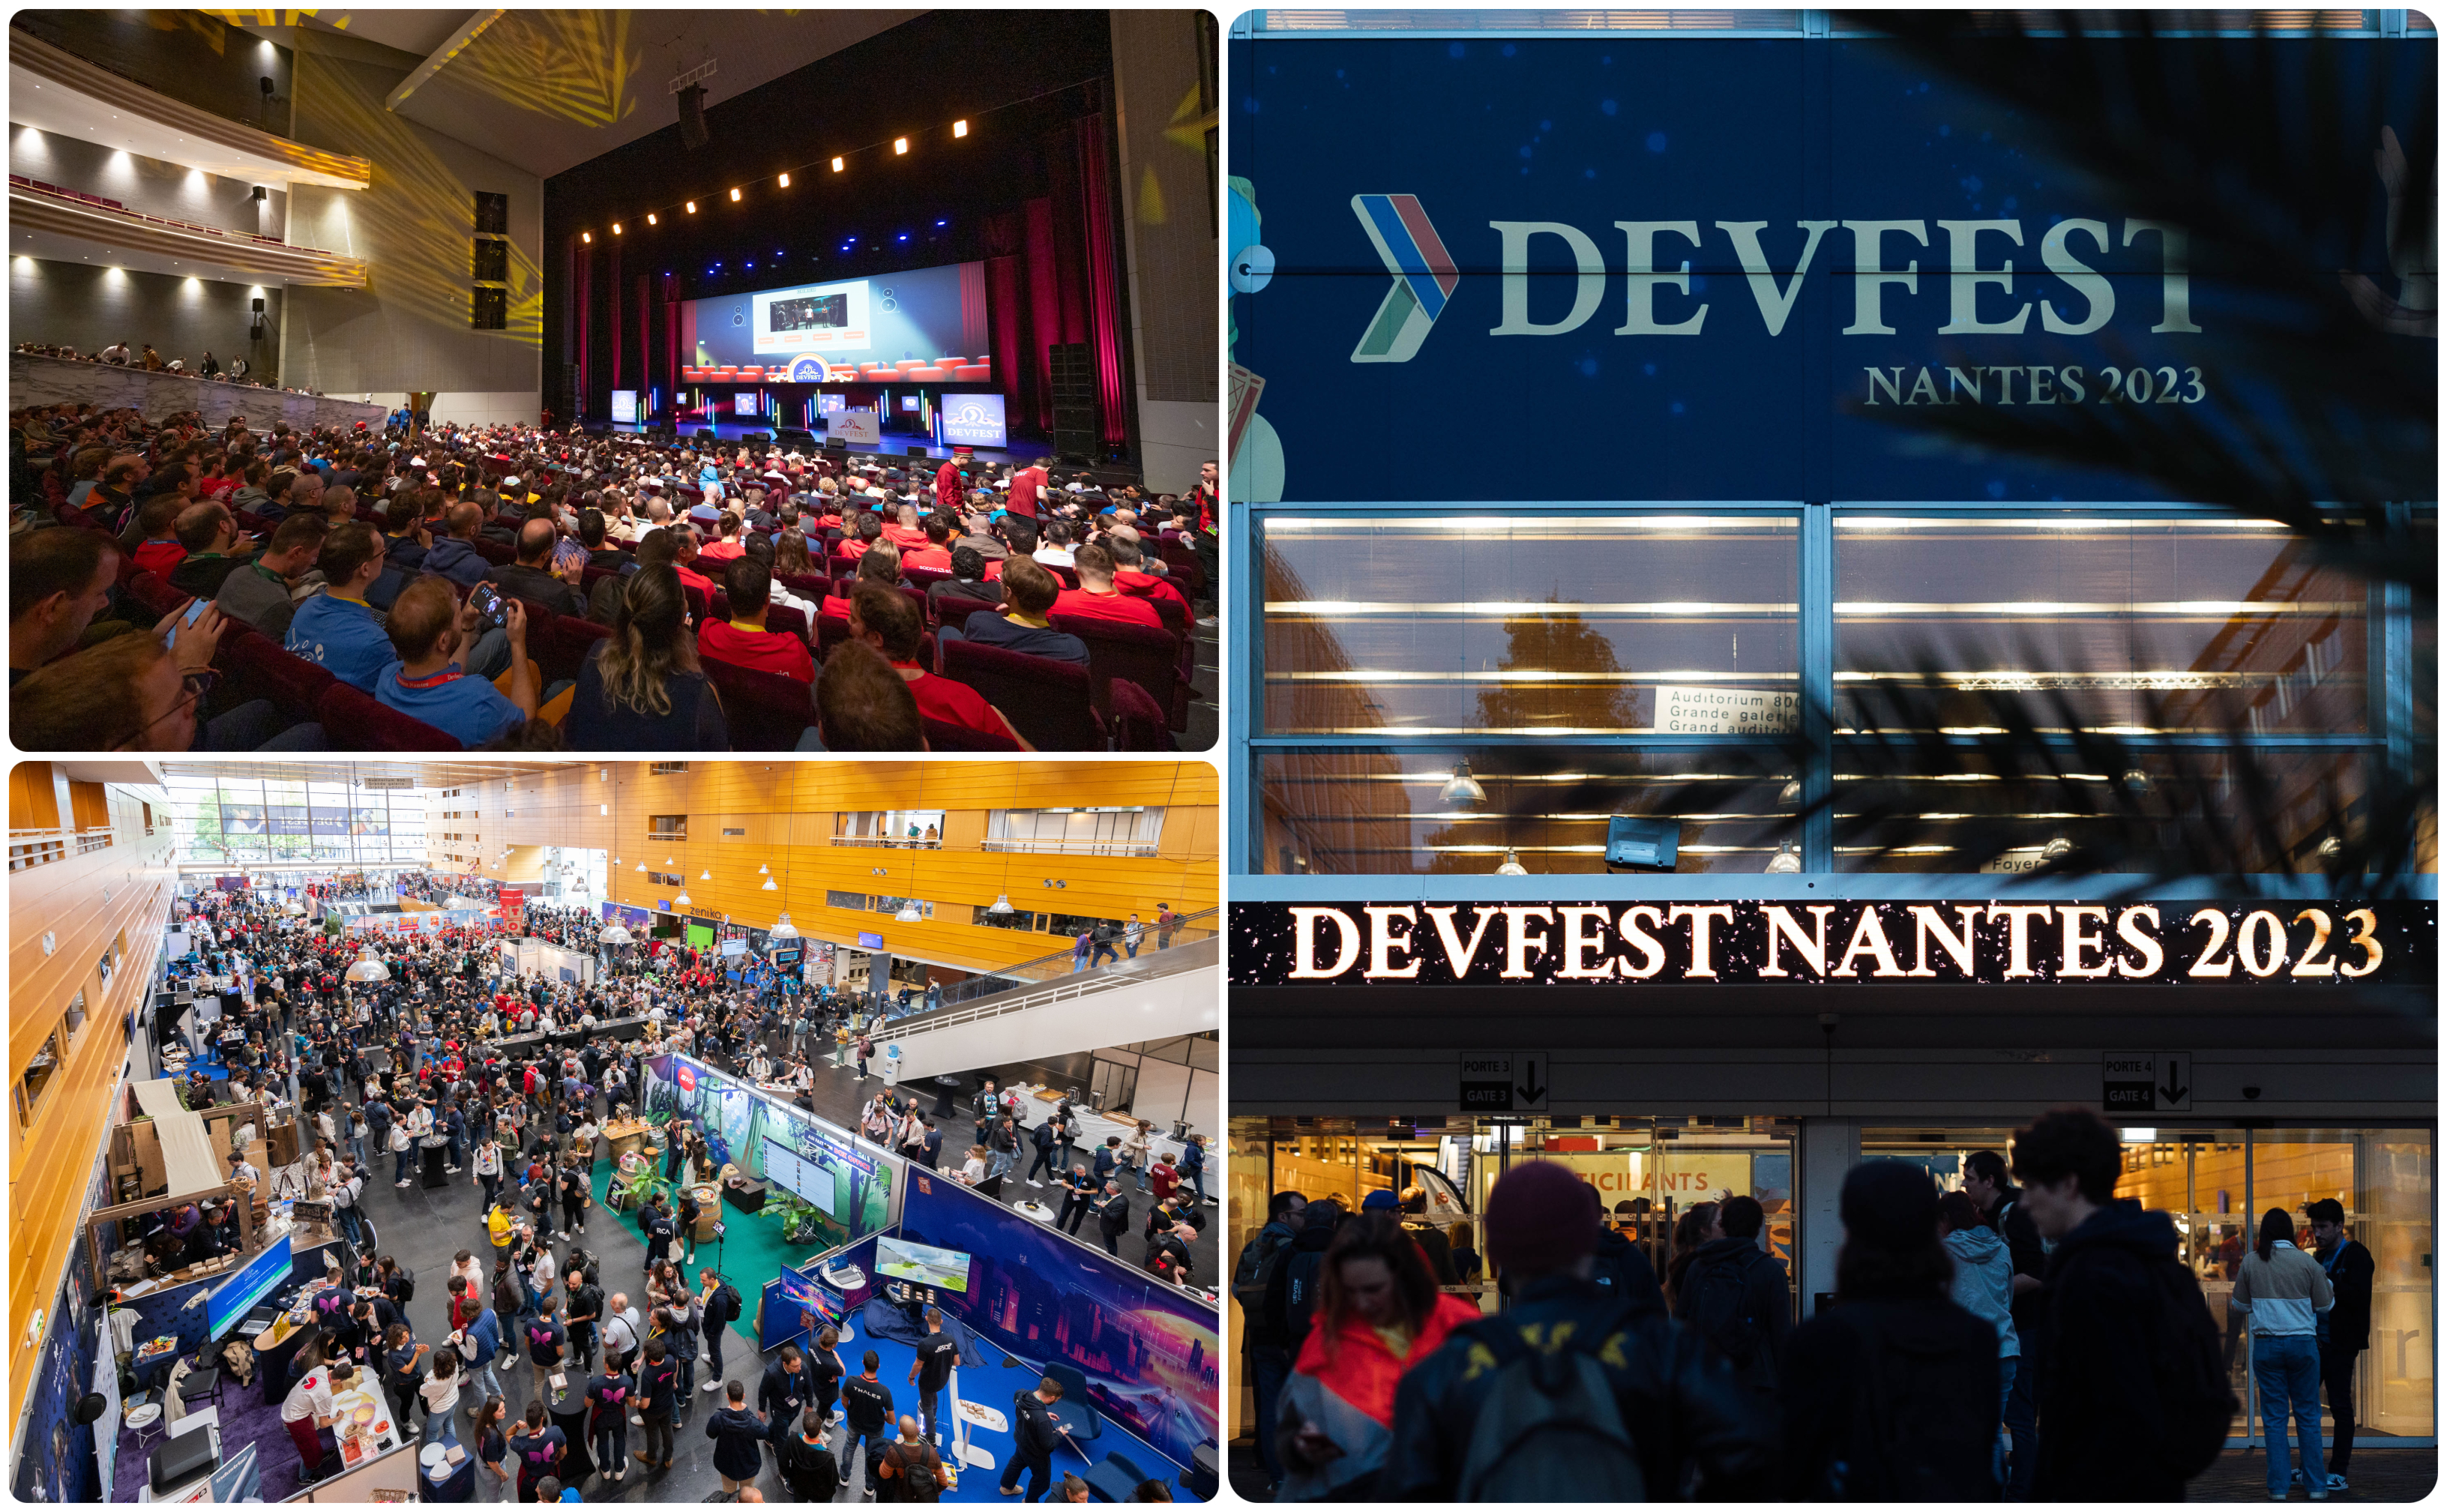 Pictures of Devfest Nantes